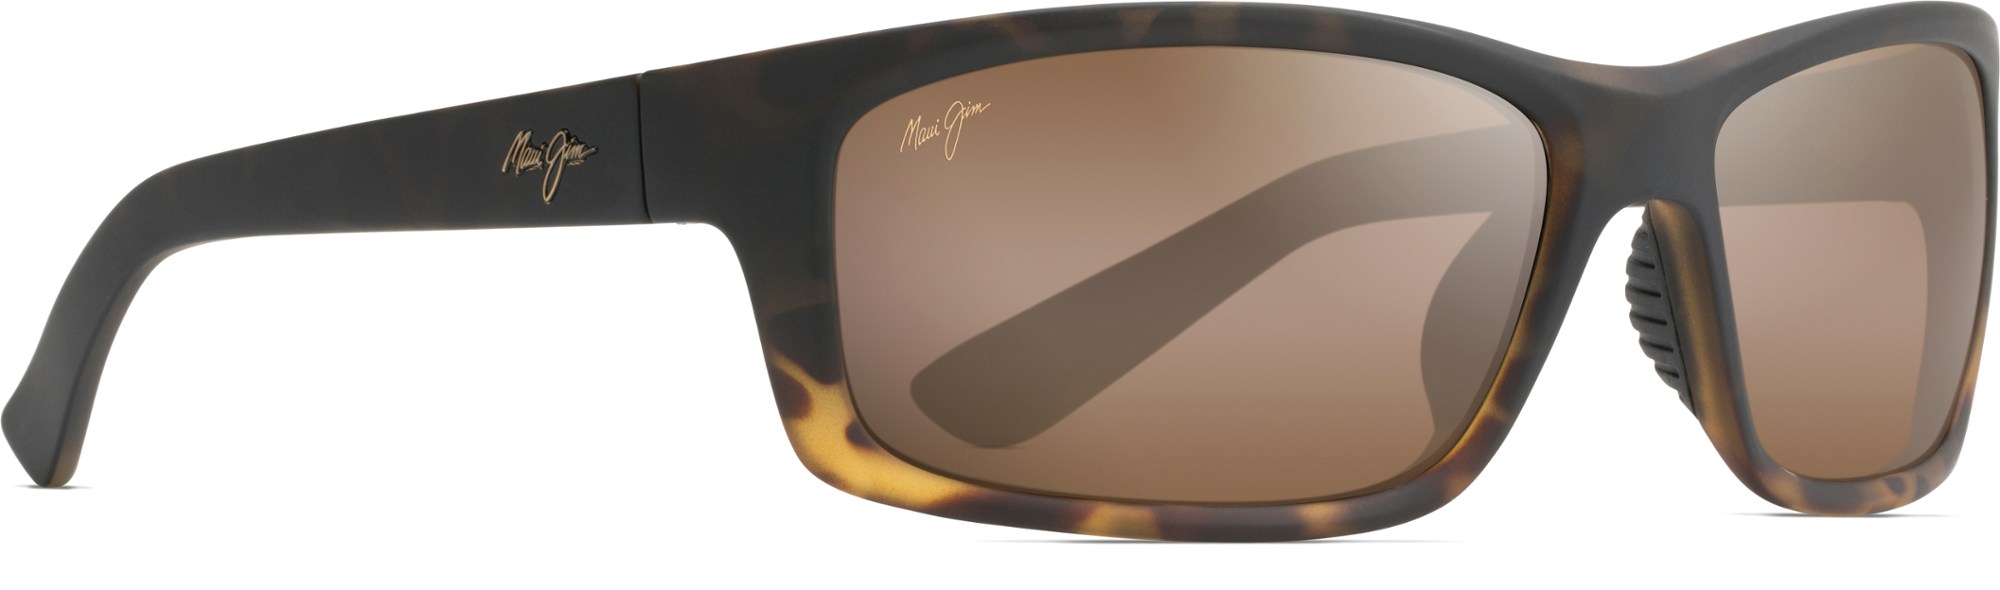 Поляризованные солнцезащитные очки Kanaio Coast Maui Jim, коричневый солнцезащитные очки one way maui jim цвет dark navy stripe blue hawaii